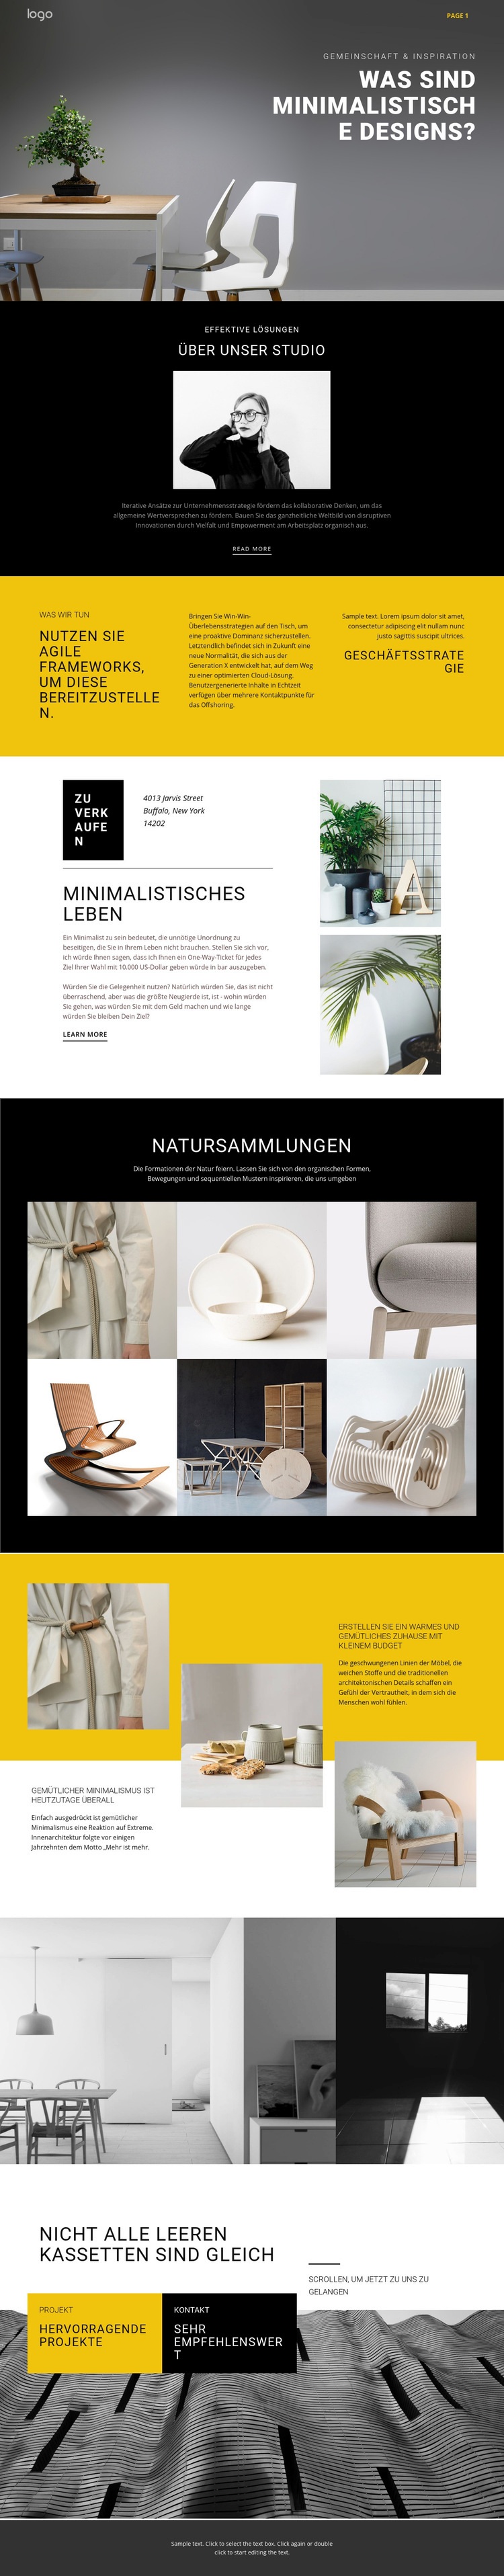 Minimalistisches Designer-Interieur Website design